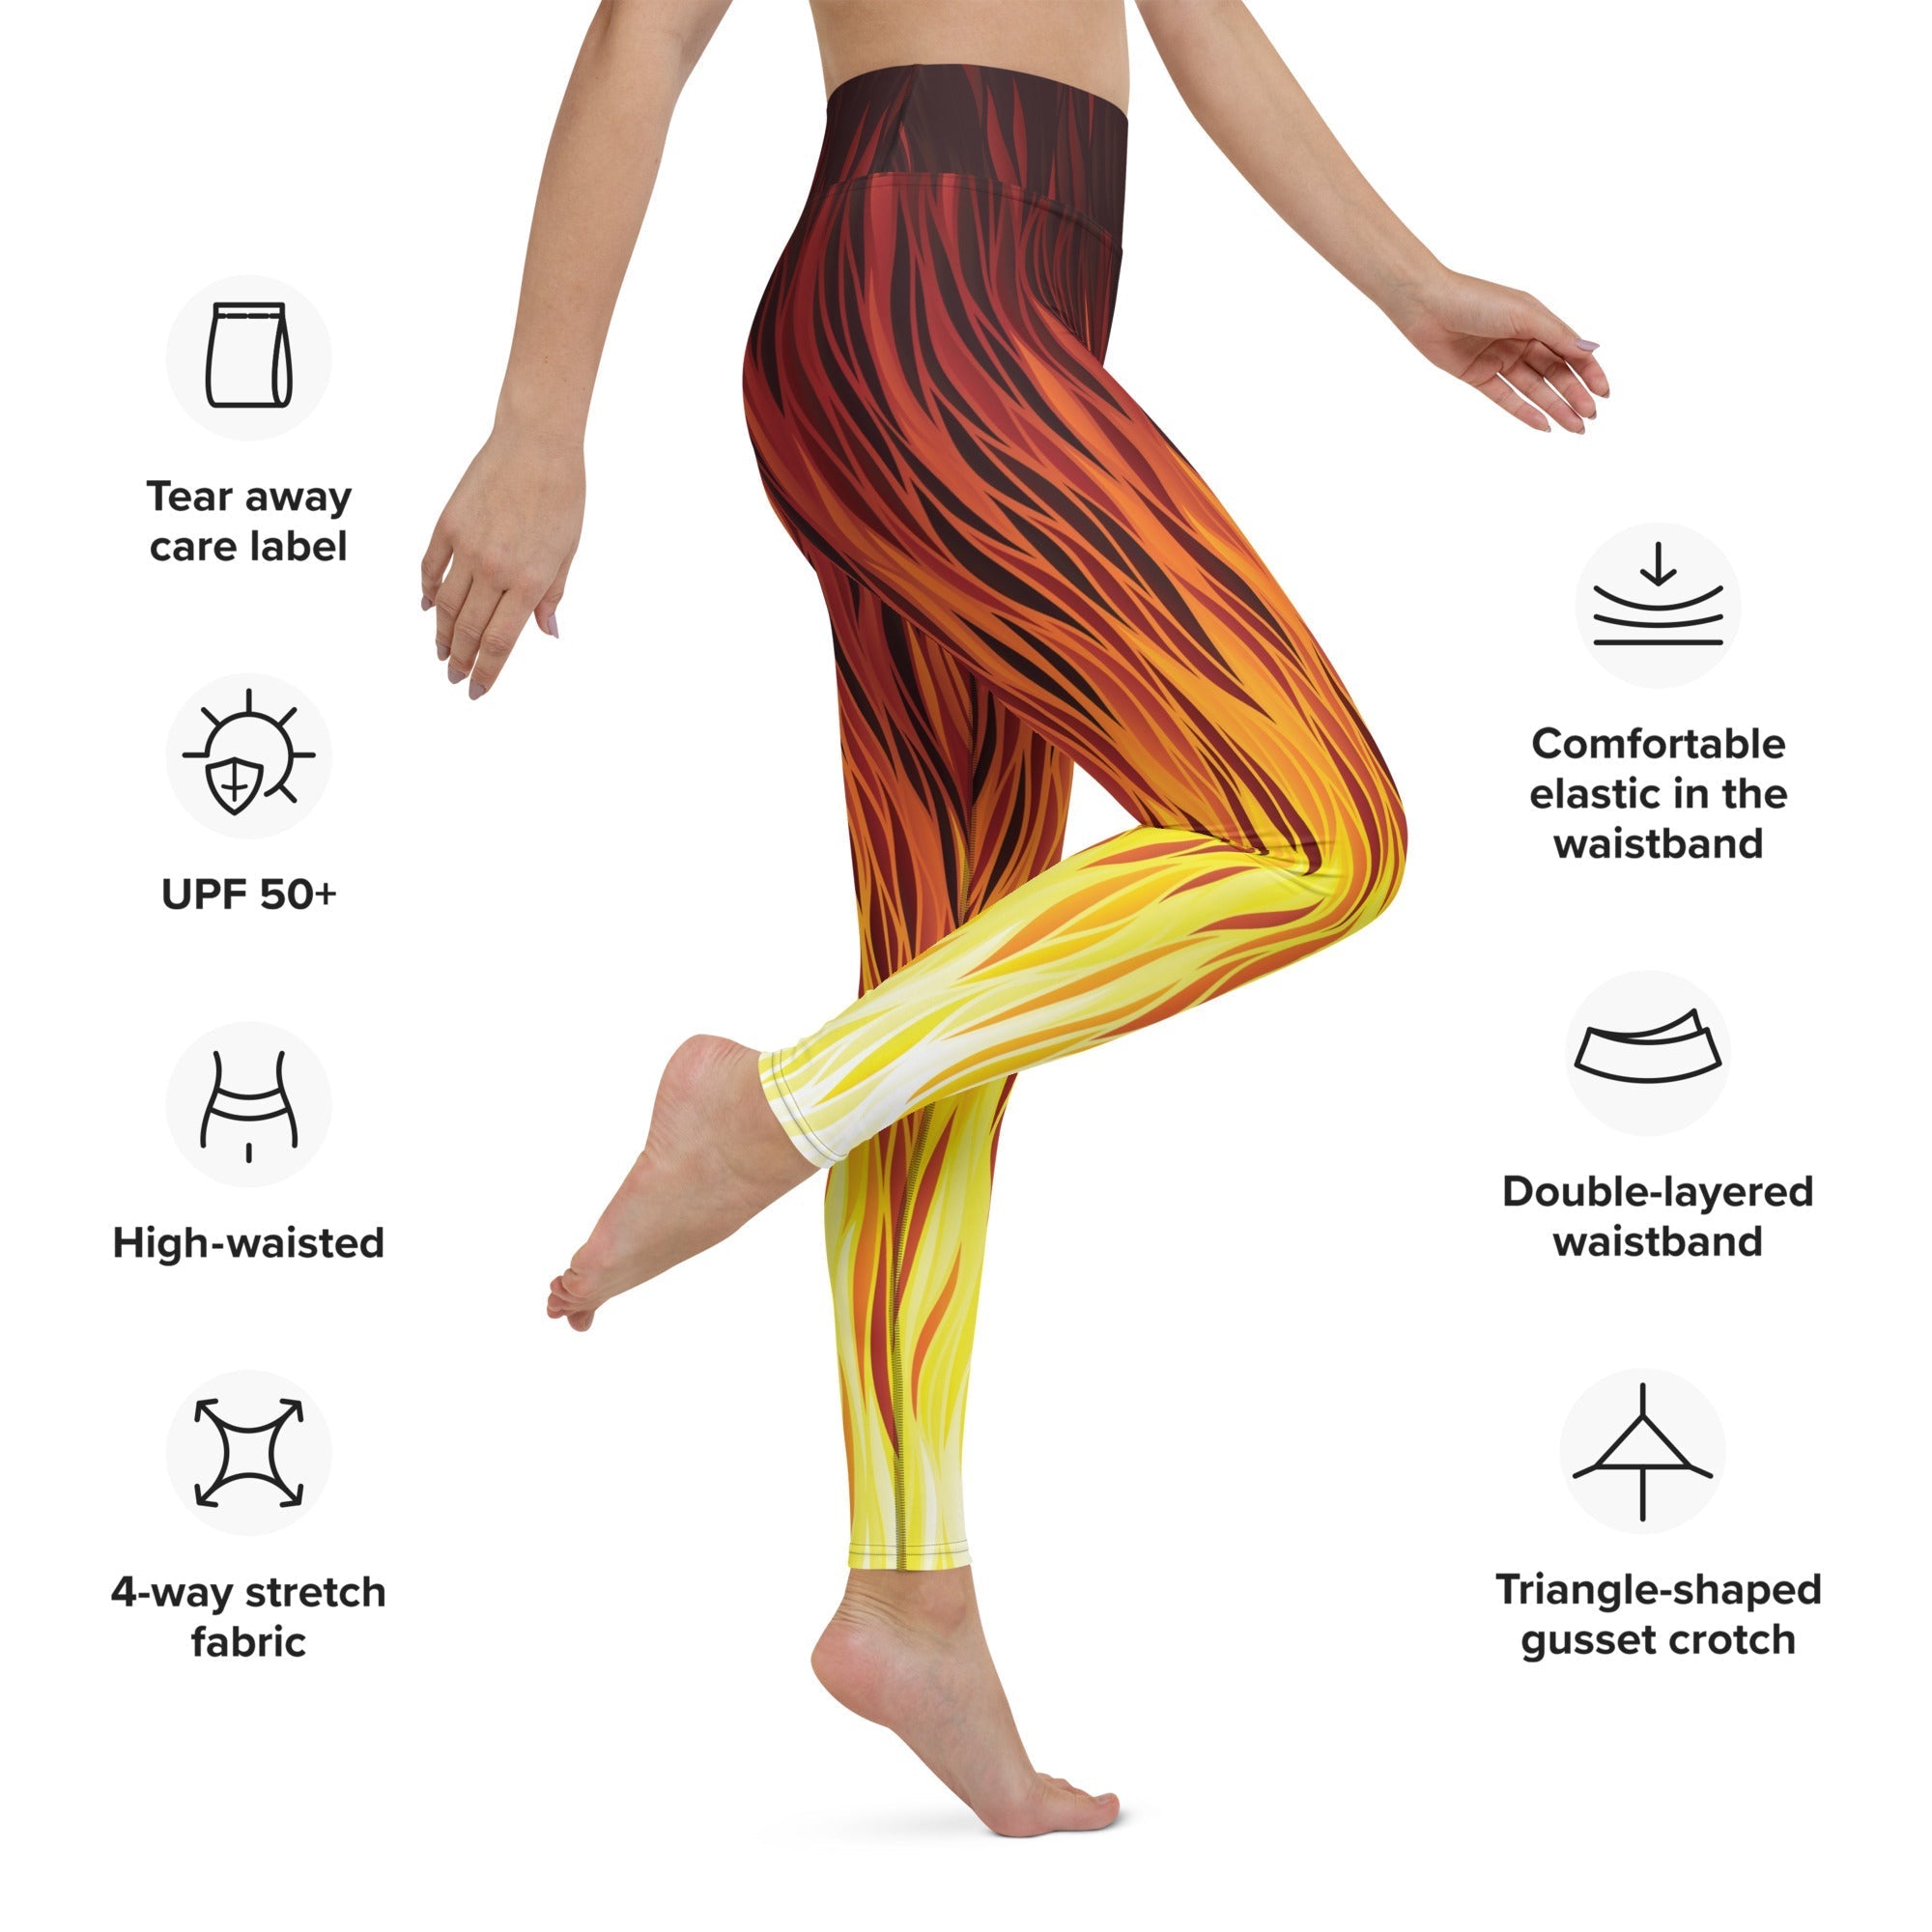 Fire Yoga Leggings